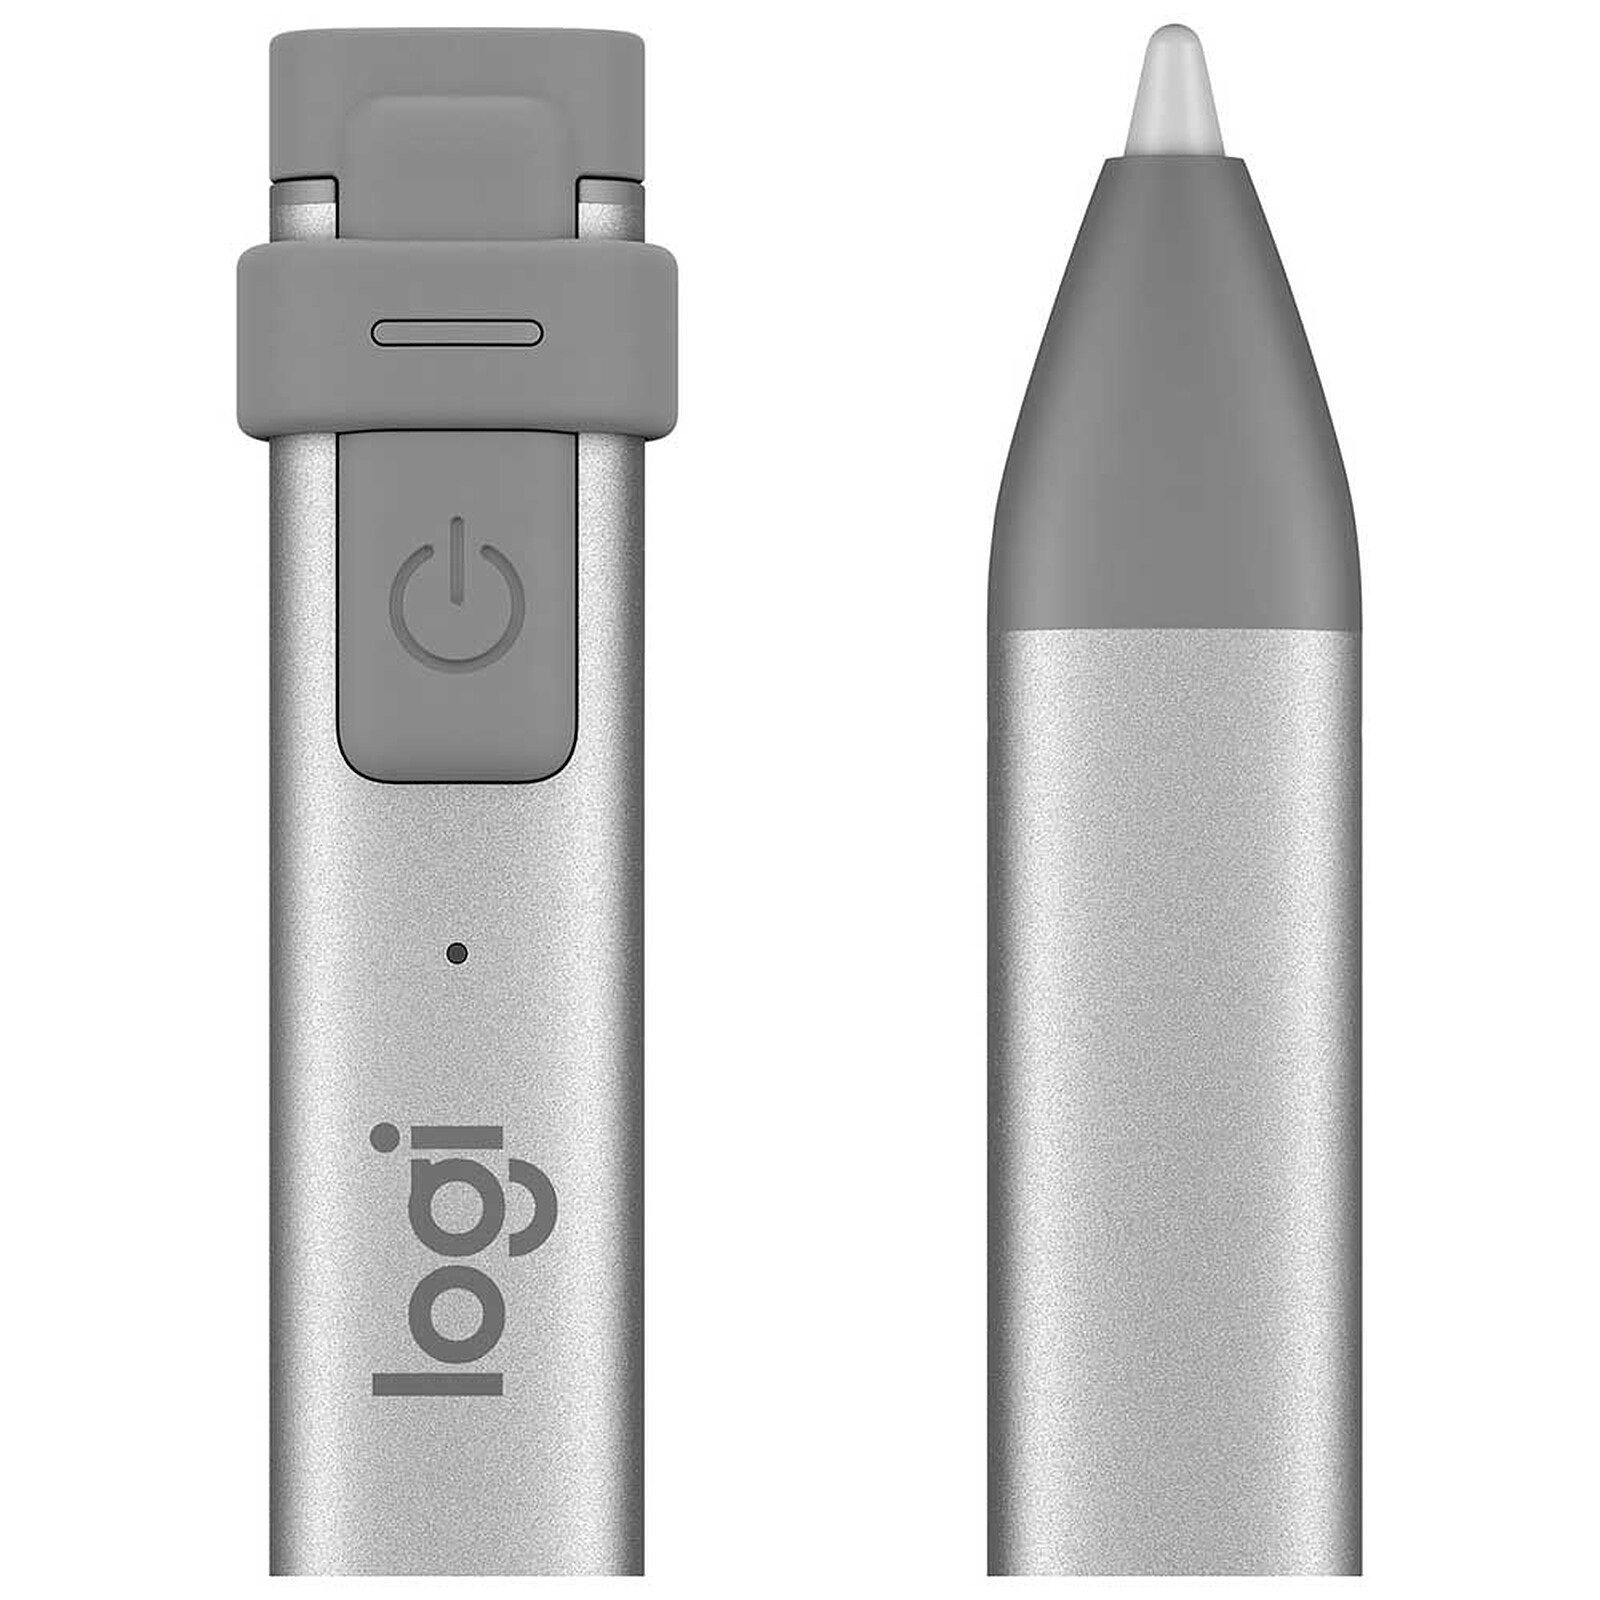 Logitech Crayon pour iPad - Technologie Apple de stylet numérique